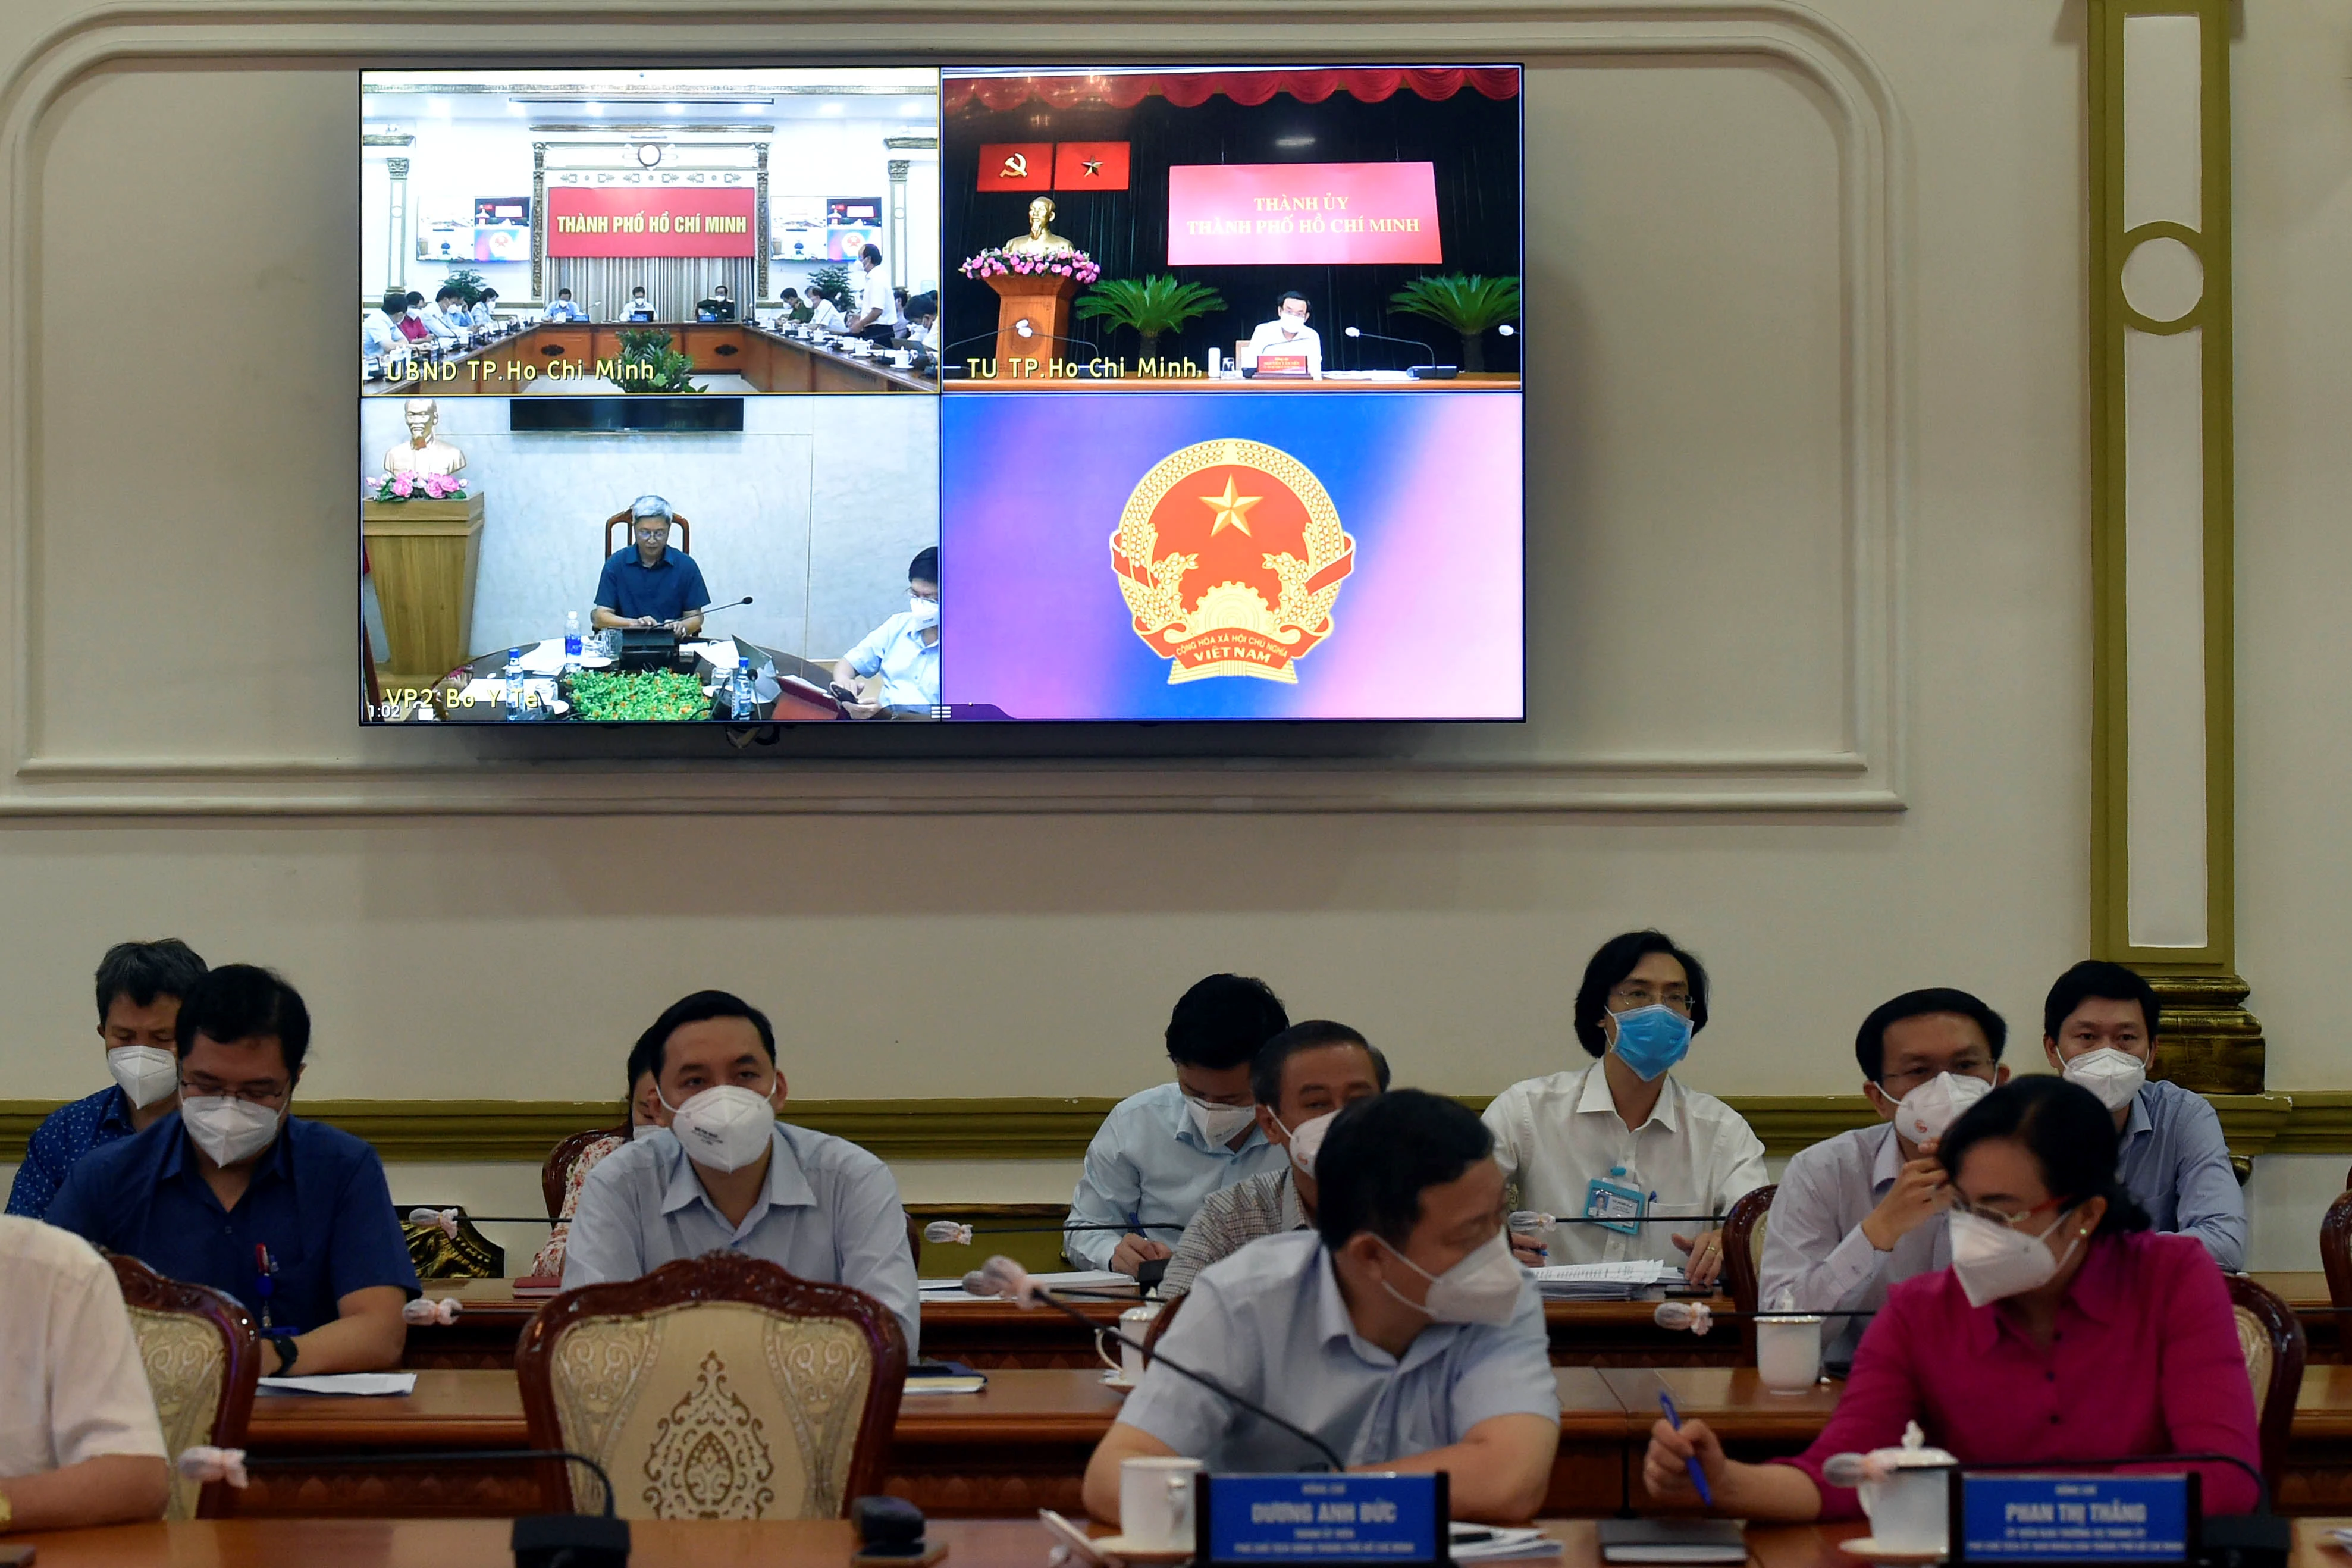 TP Hồ Chí Minh đề nghị tăng thêm đội ngũ nhân viên siêu thị, shipper trên nguyên tắc kiểm soát chặt chẽ, bảo đảm an toàn. Ảnh: VGP/Đình Nam